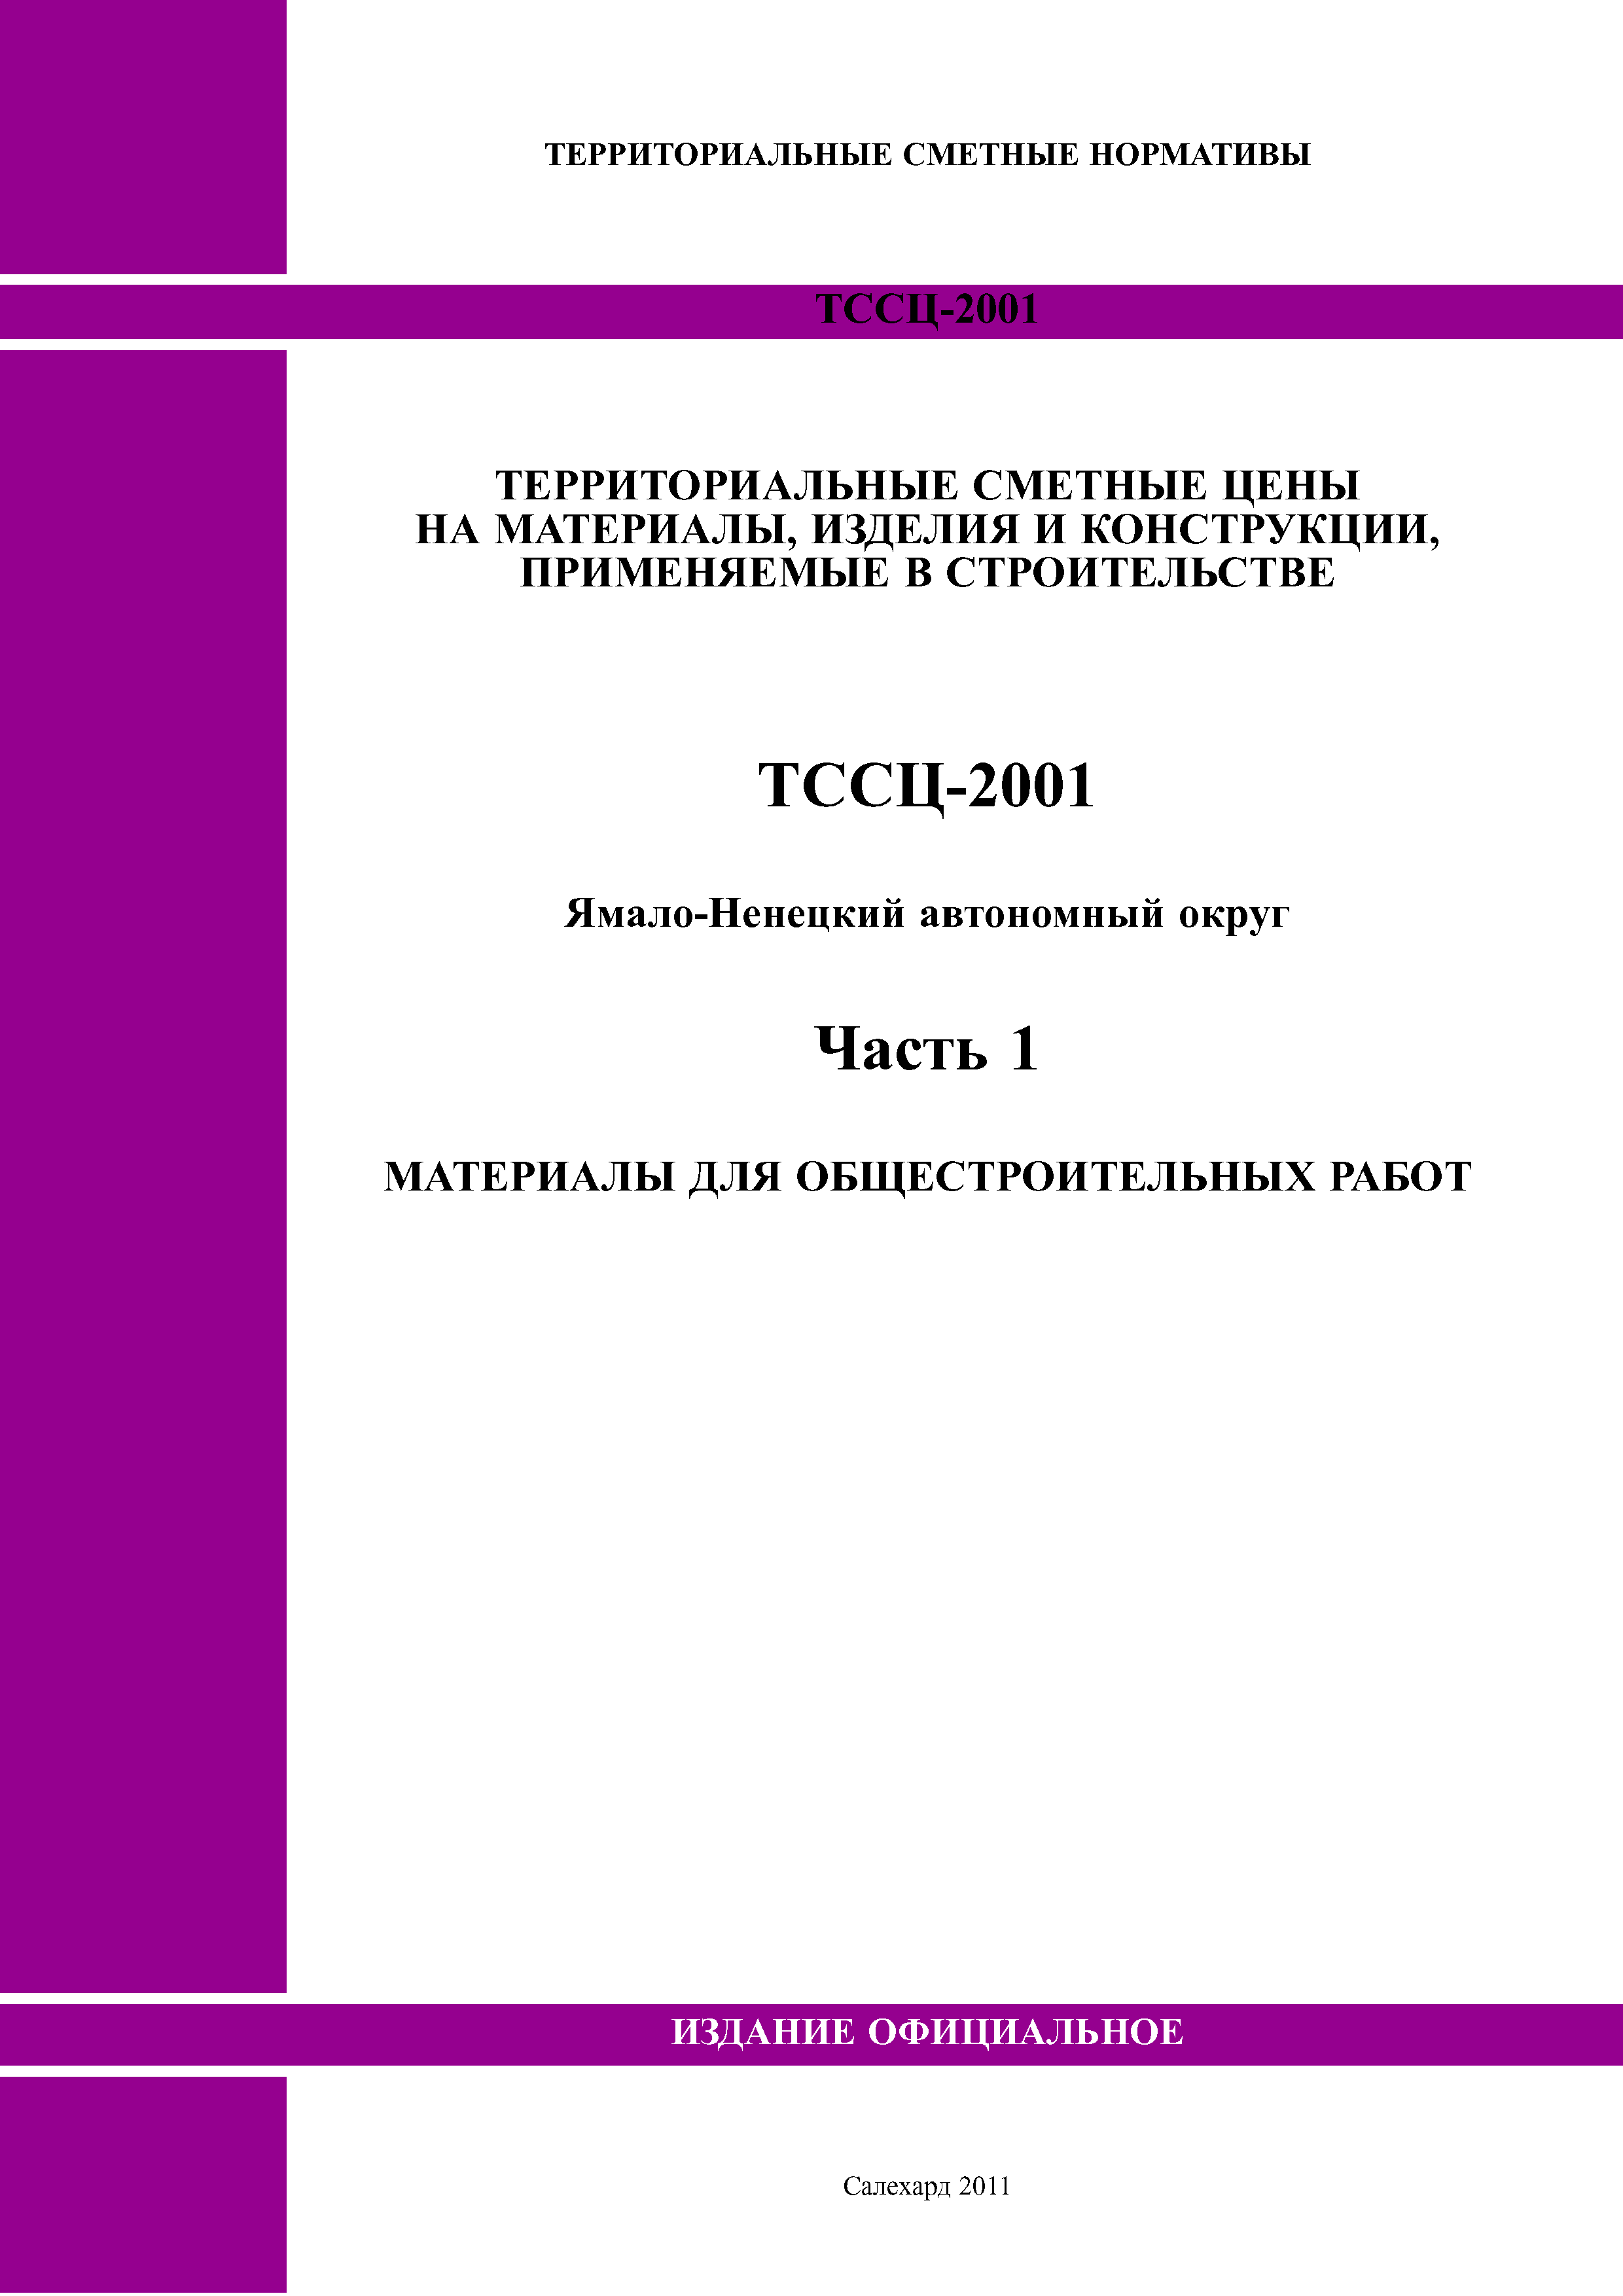 ТССЦ Ямало-Ненецкий автономный округ 01-2001